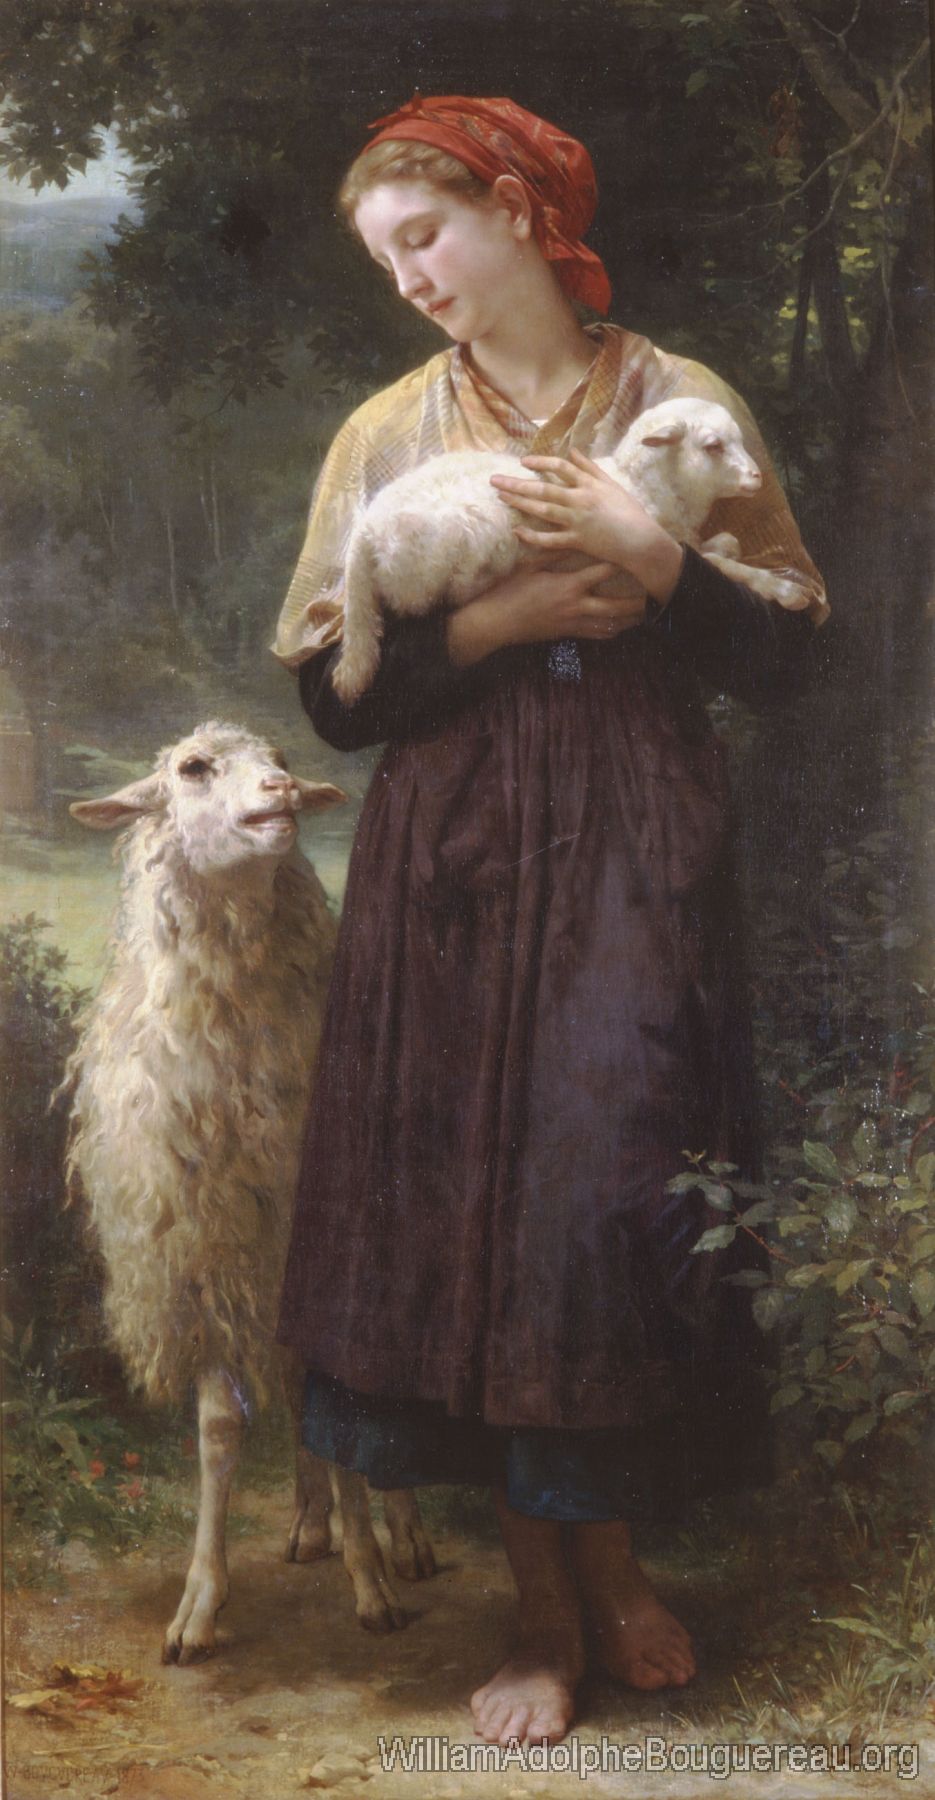 L'agneau nouveau-ne (The Newborn Lamb)